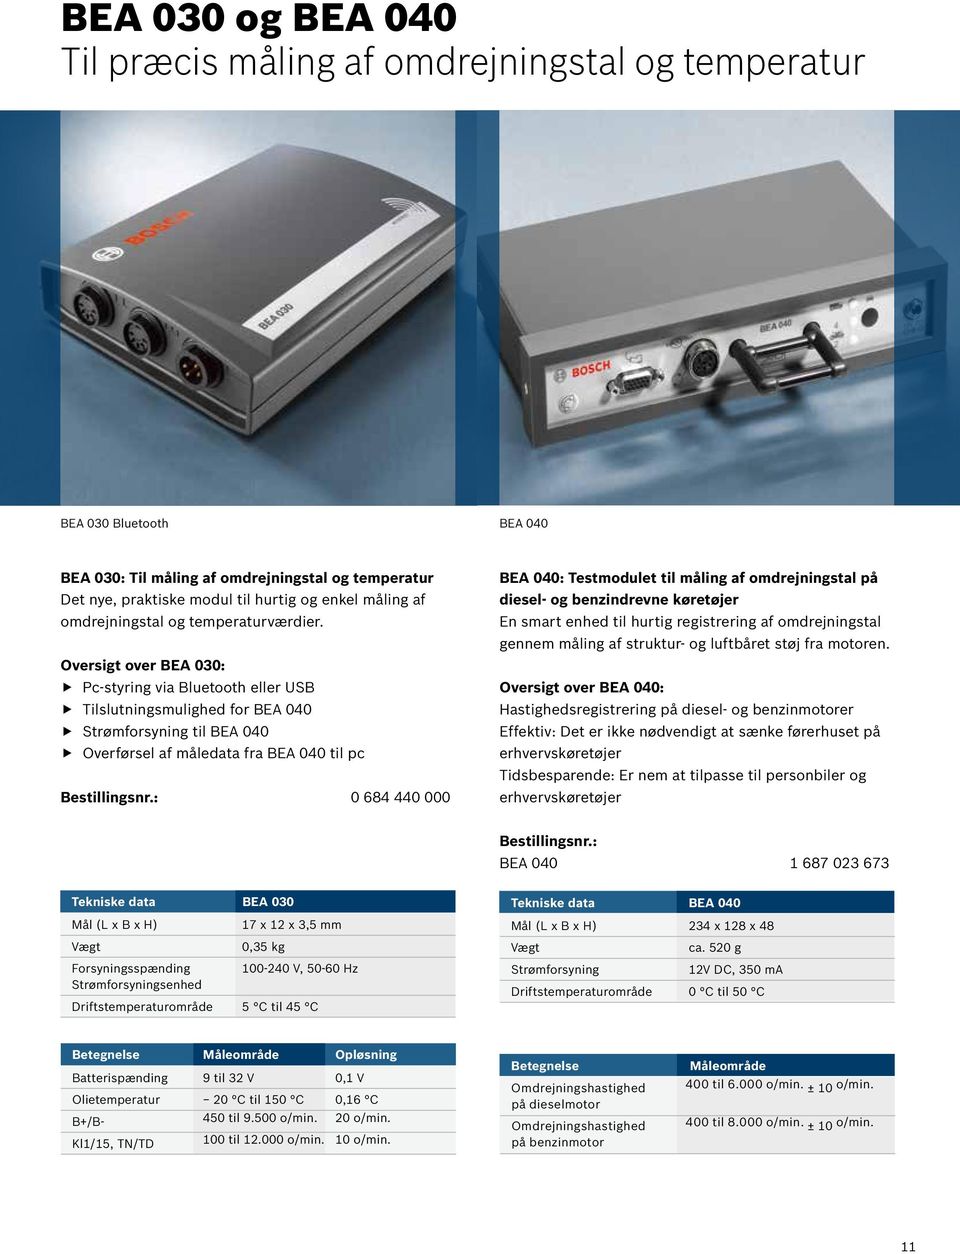 Oversigt over BEA 030: Pc-styring via Bluetooth eller USB Tilslutningsmulighed for BEA 040 Strømforsyning til BEA 040 Overførsel af måledata fra BEA 040 til pc Bestillingsnr.